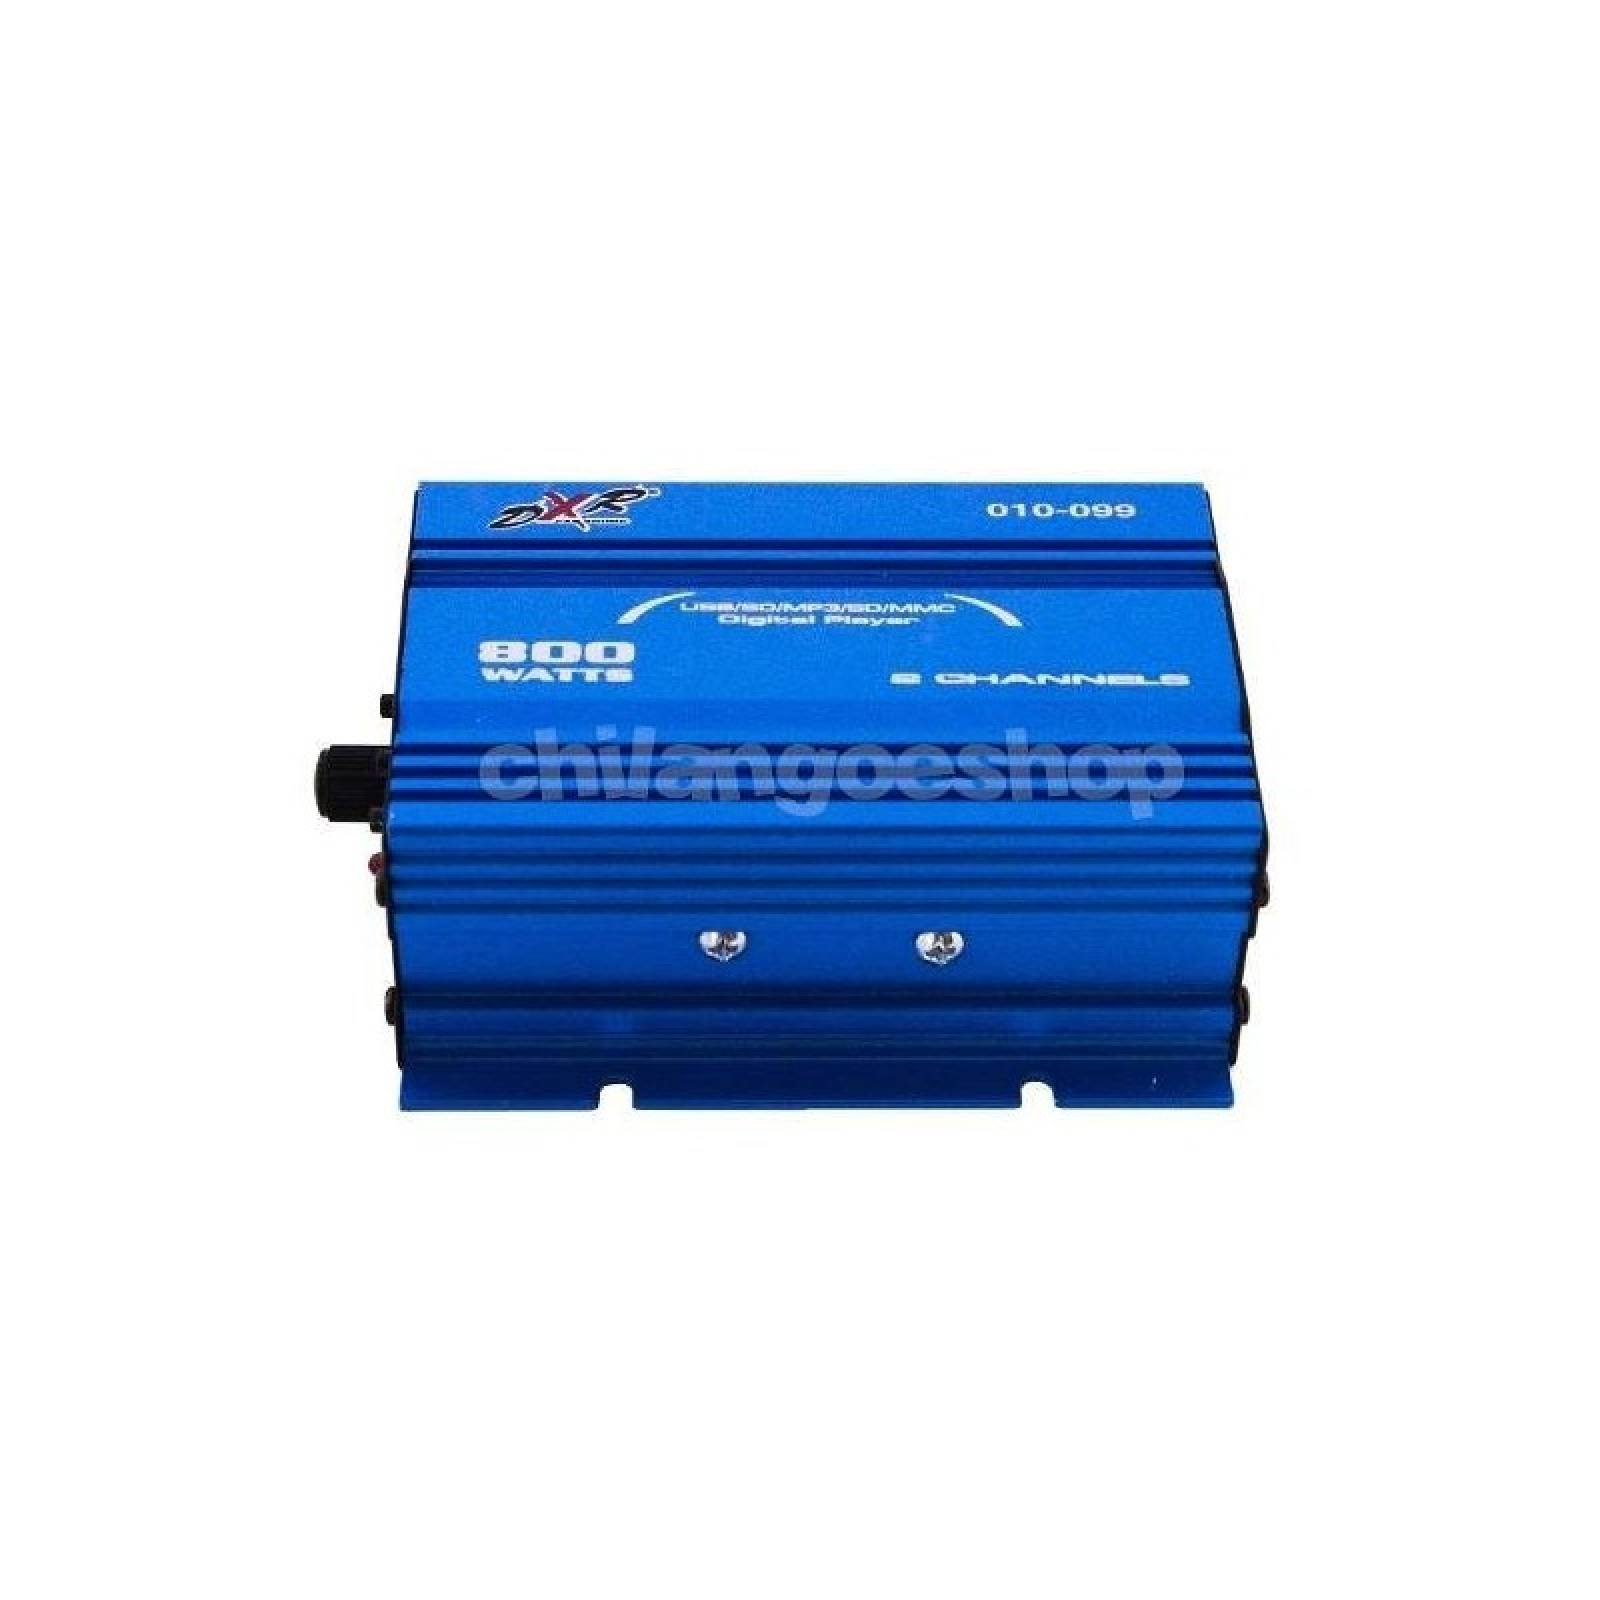 Amplificador Dxr 2 Canales Mini 800w Pmpo Usb Y Sd AZUL 